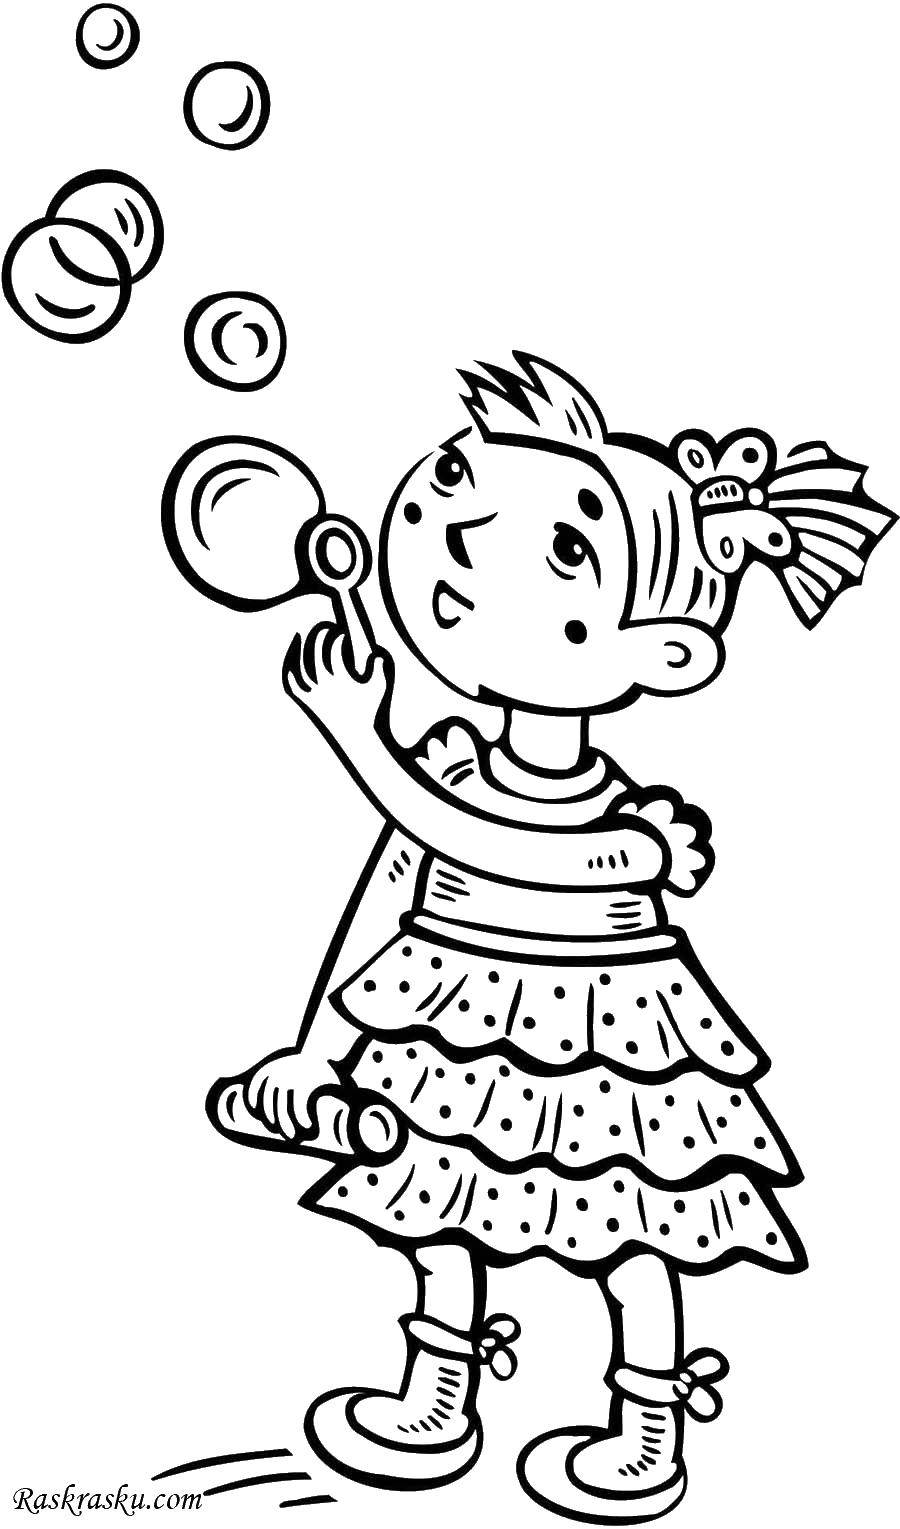 Название: Раскраска Девочка пускает пузыри. Категория: Девочка. Теги: девочка, пузыри, дети.